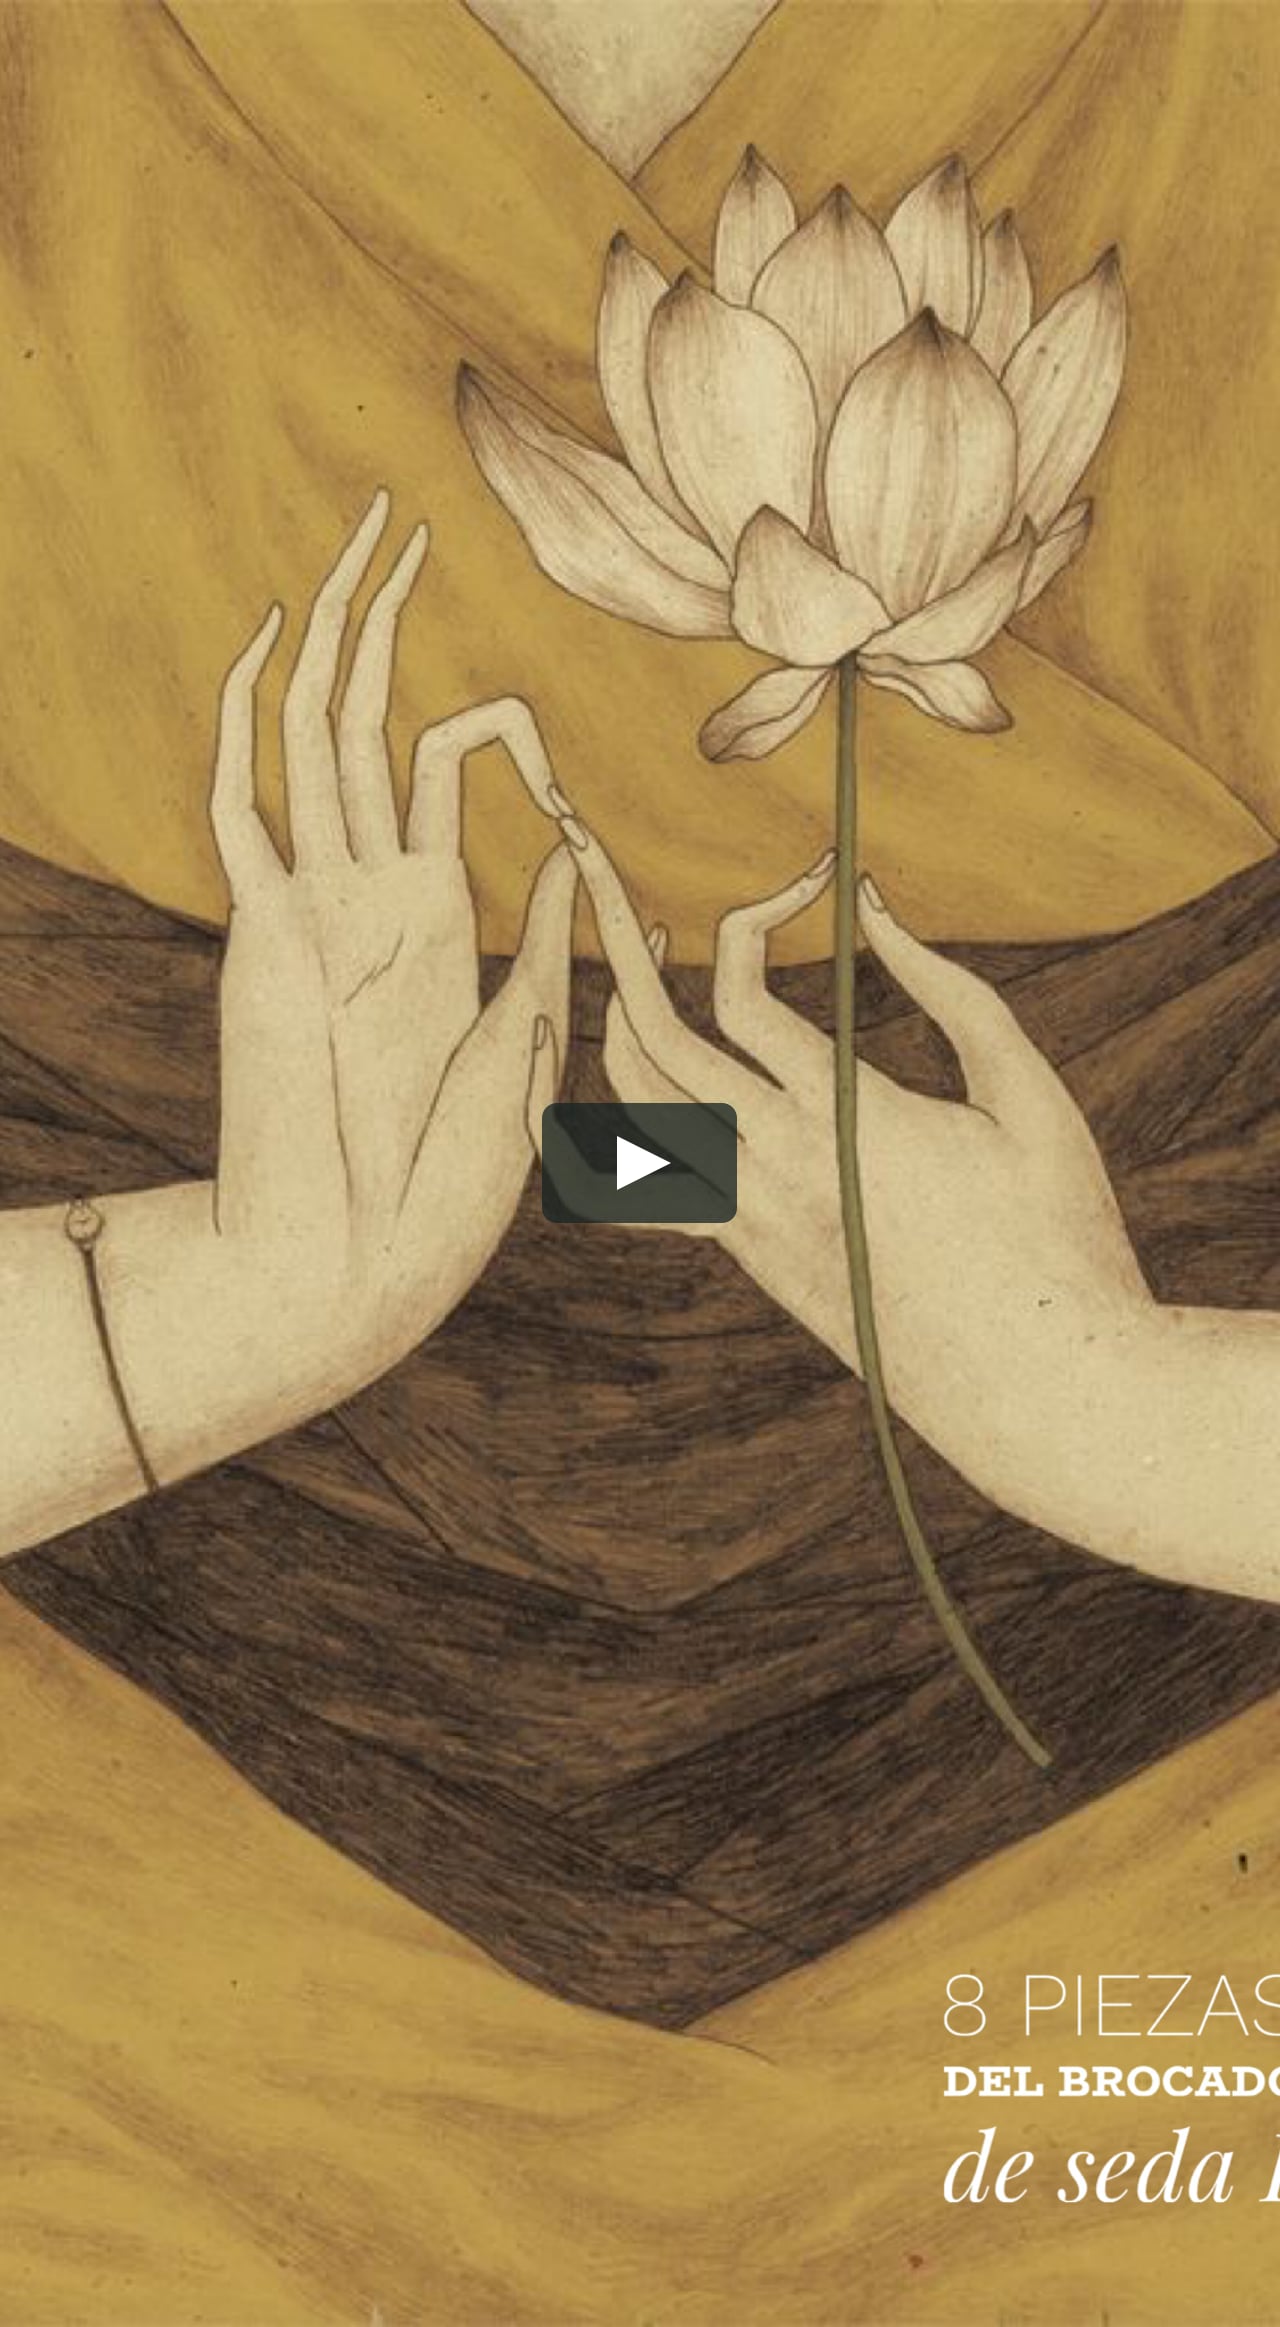 Bienes Telégrafo Ya Chi Kung ocho piezas del brocado de seda 1 on Vimeo